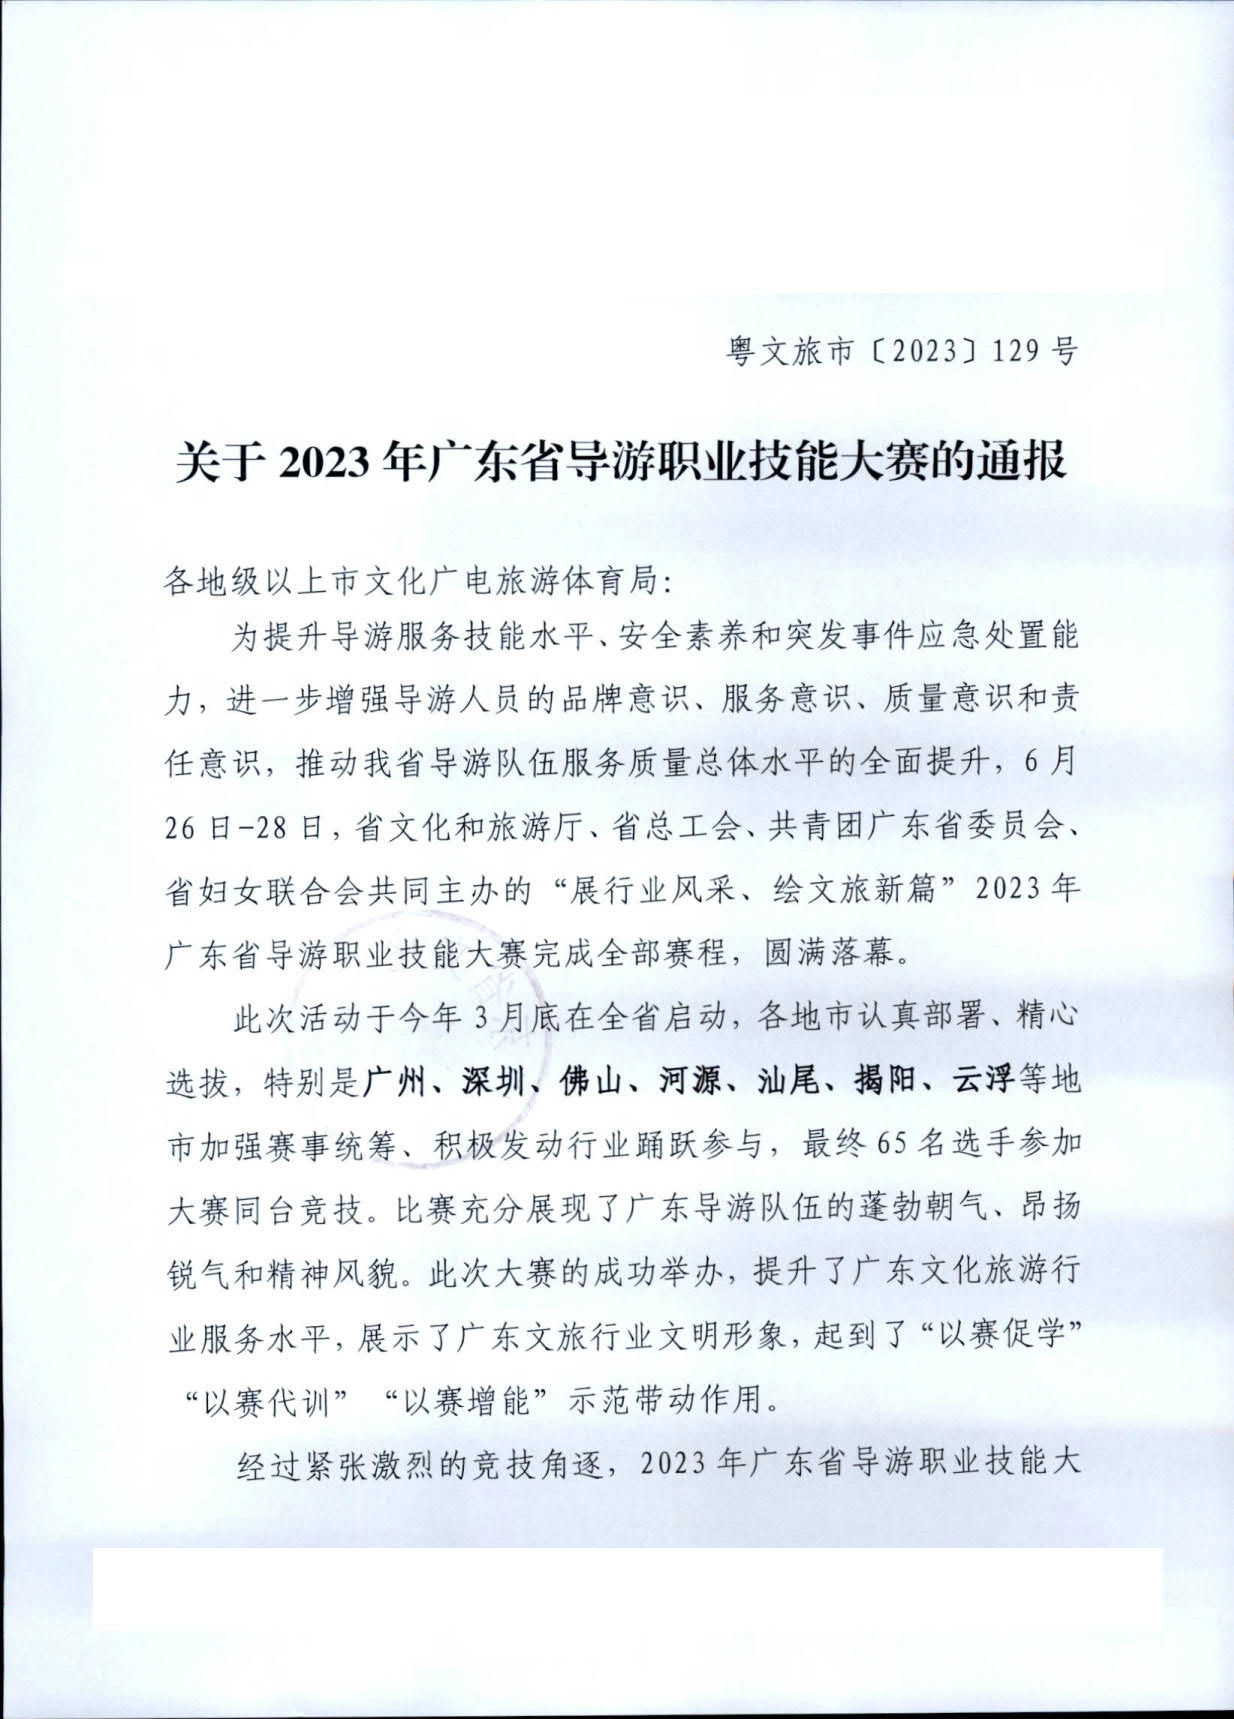 广东省文化和旅游厅关于2023年广东省导游职业技能大赛的通报_1.jpg